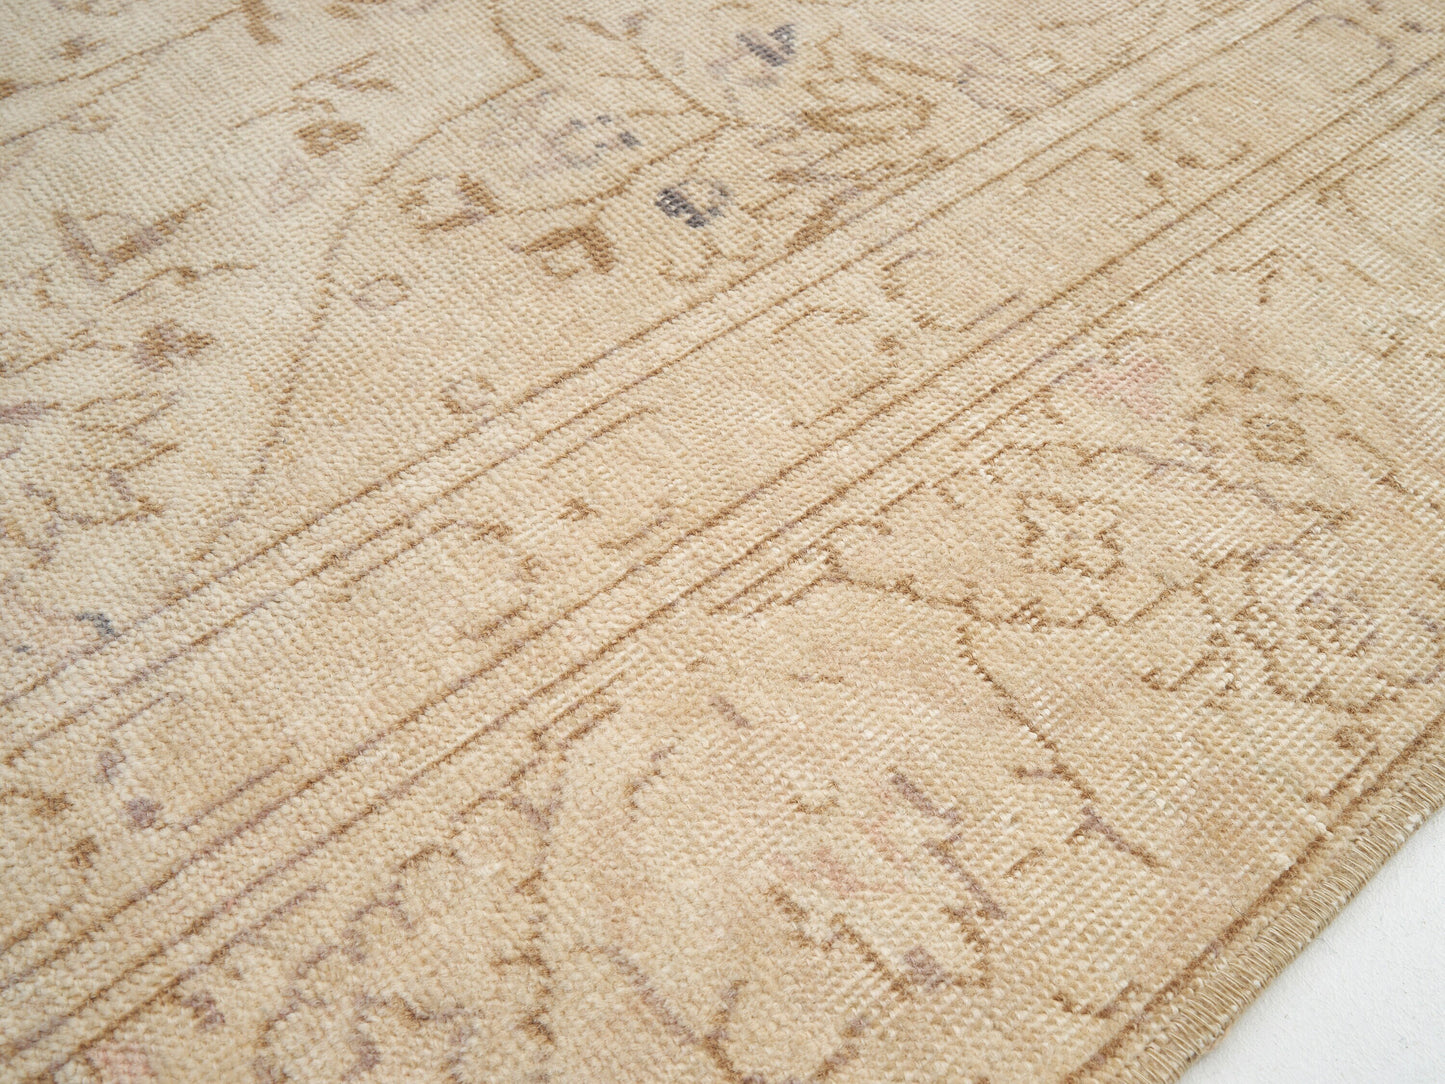 Turkish rug, Vintage Rug, Faded rug, Antique rug 8x11, Muted Rug,Large Oushak Rug, Area rug 8x11, Carpet rug, Oversize rug, Pastel Rug,9089